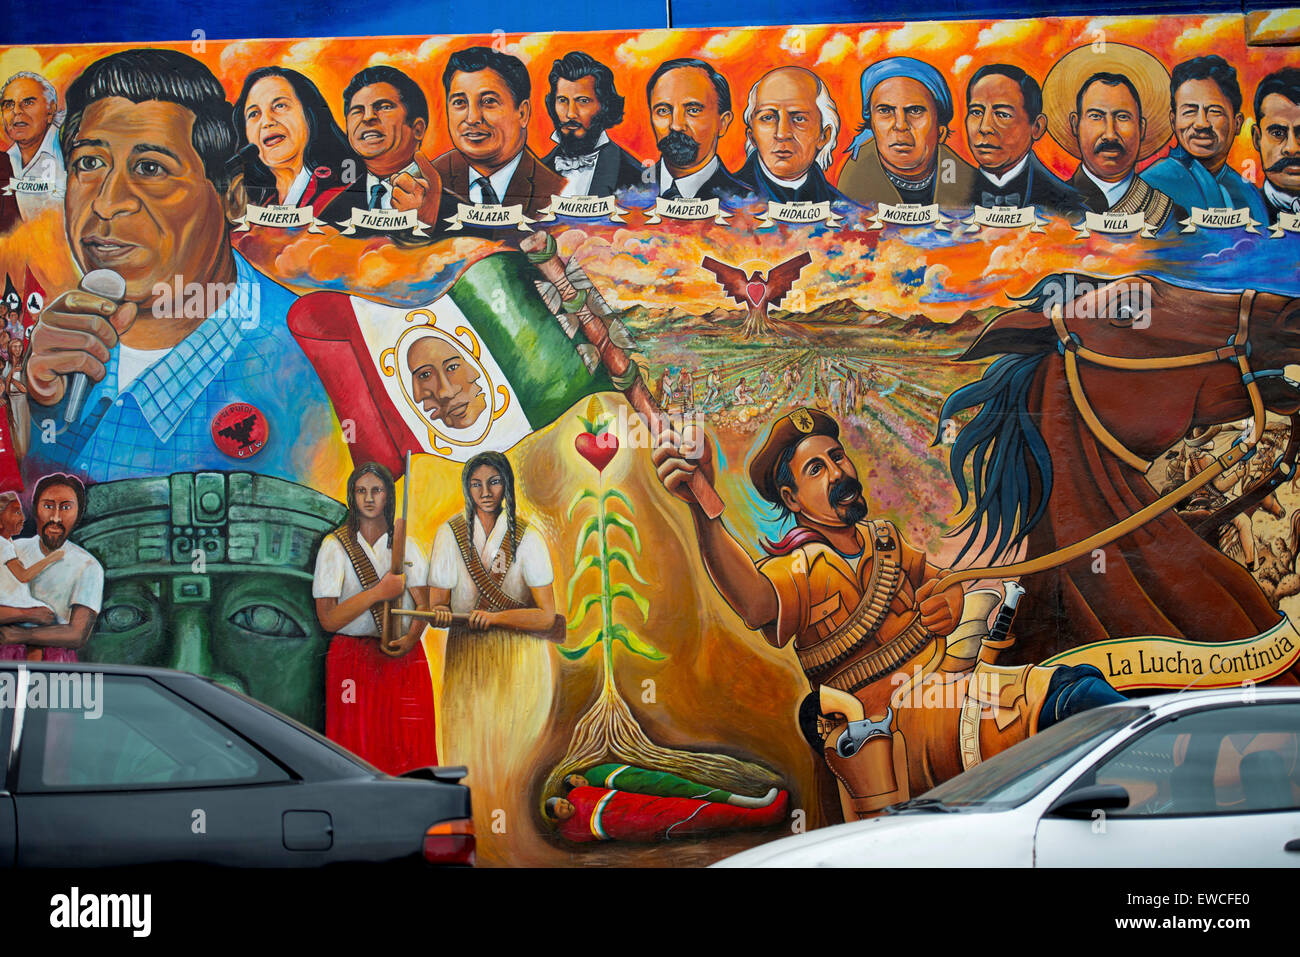 La murale Toltecas en Aztlan à Chicano Park, Barrio Logan, sous le San Diego-Coronado Bridge, San Diego, Californie Banque D'Images